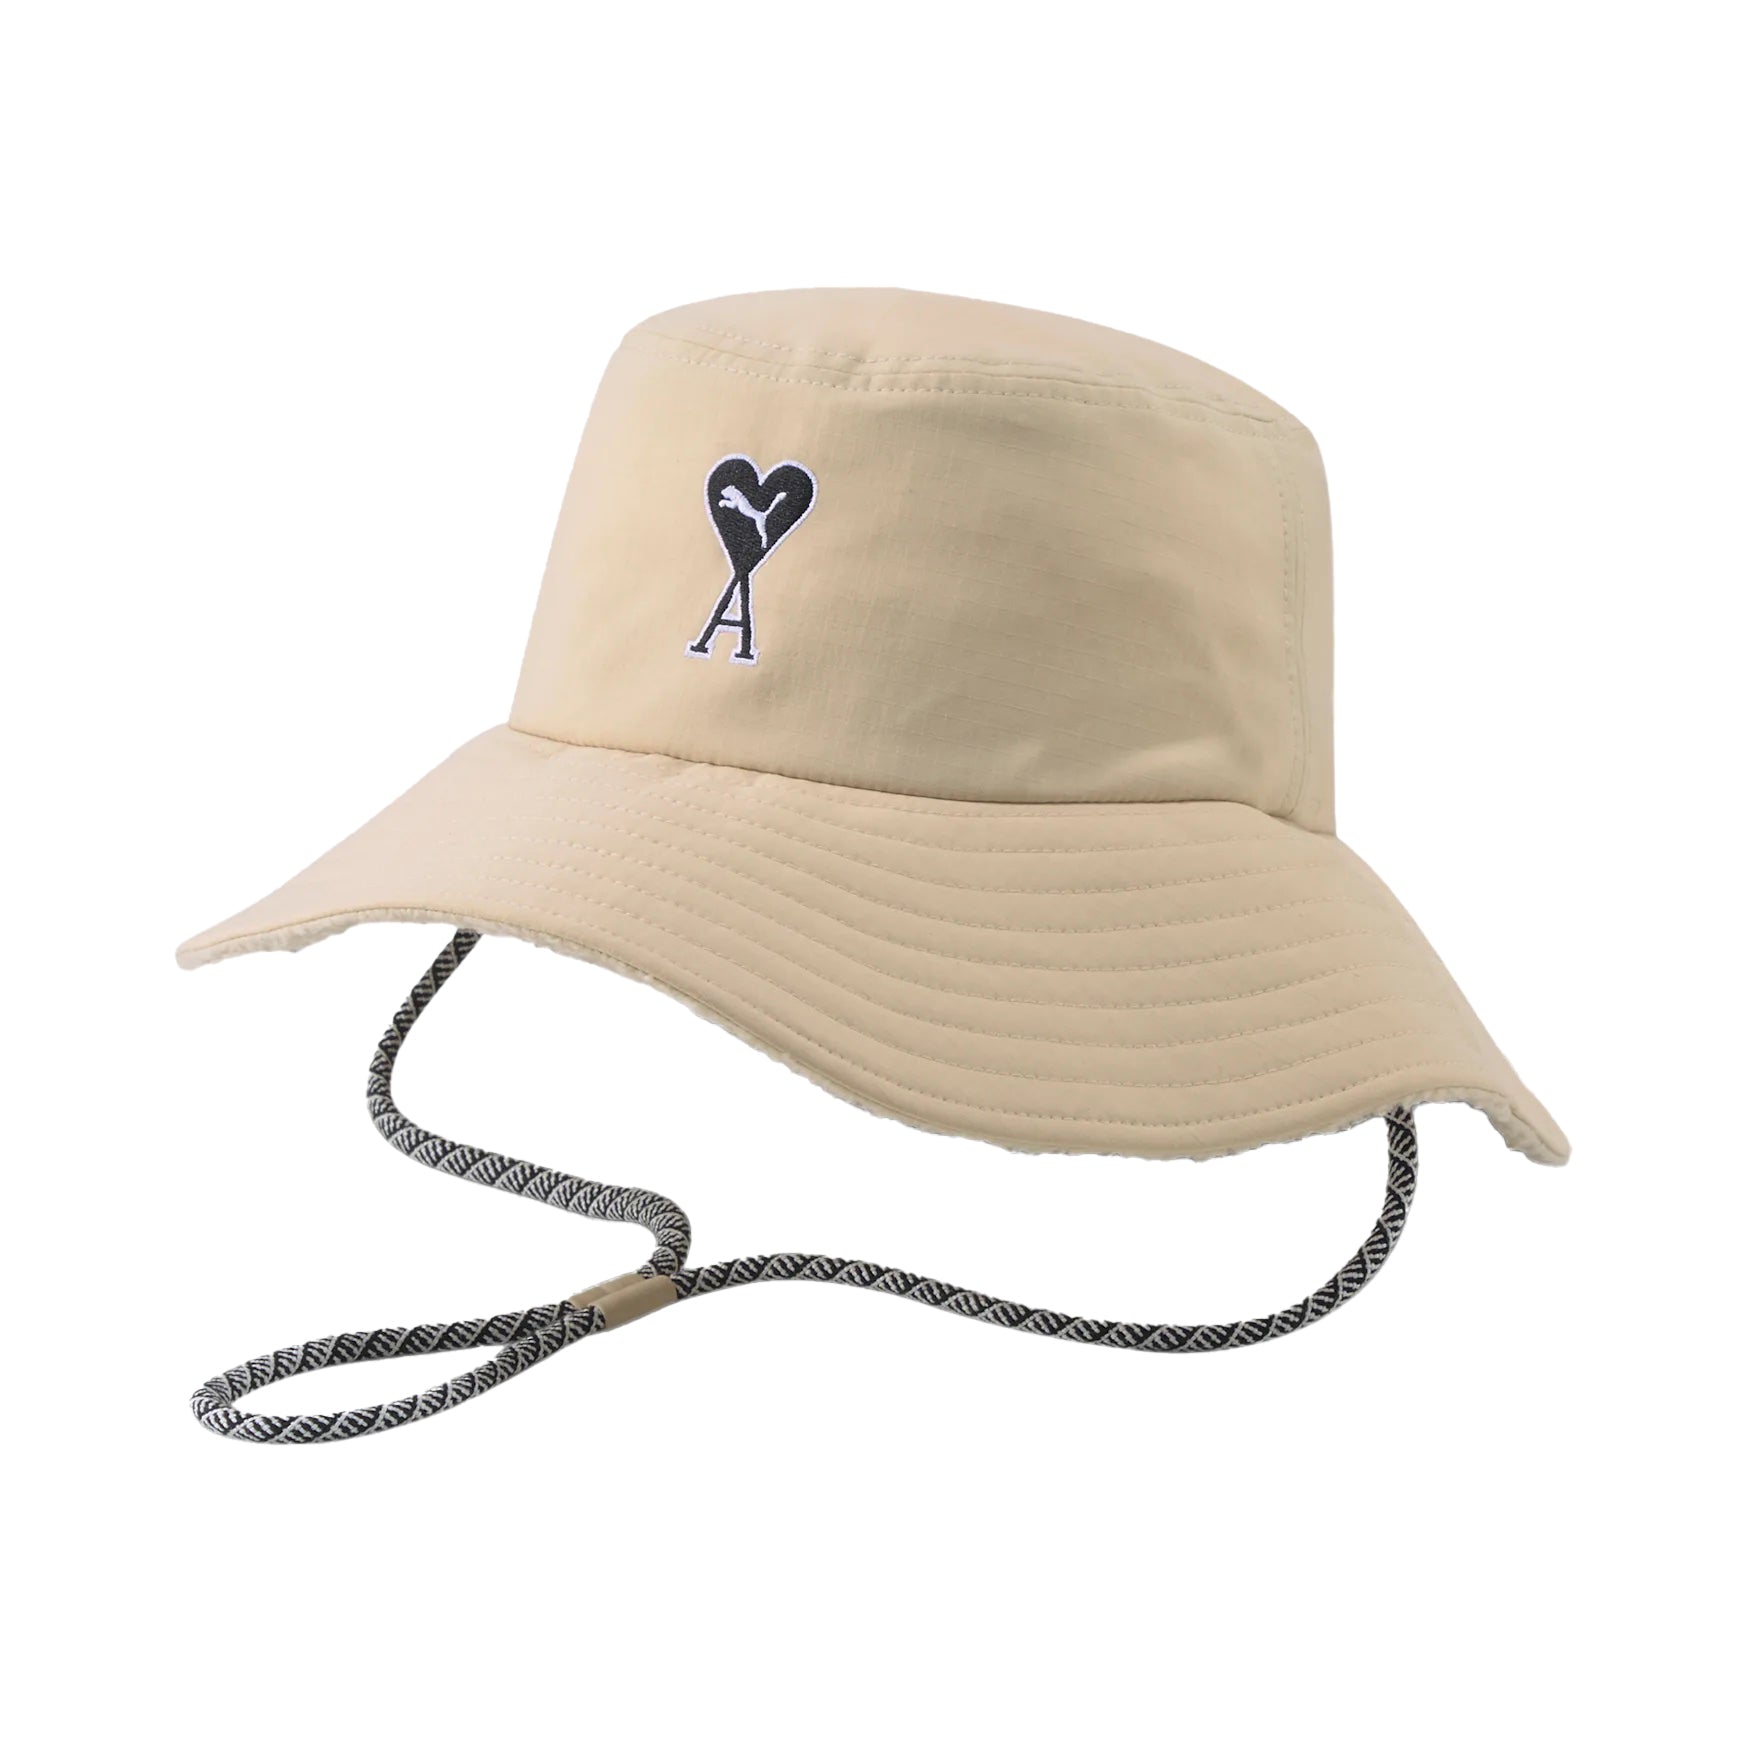 Puma x AMI Bucket Hat Light Sand